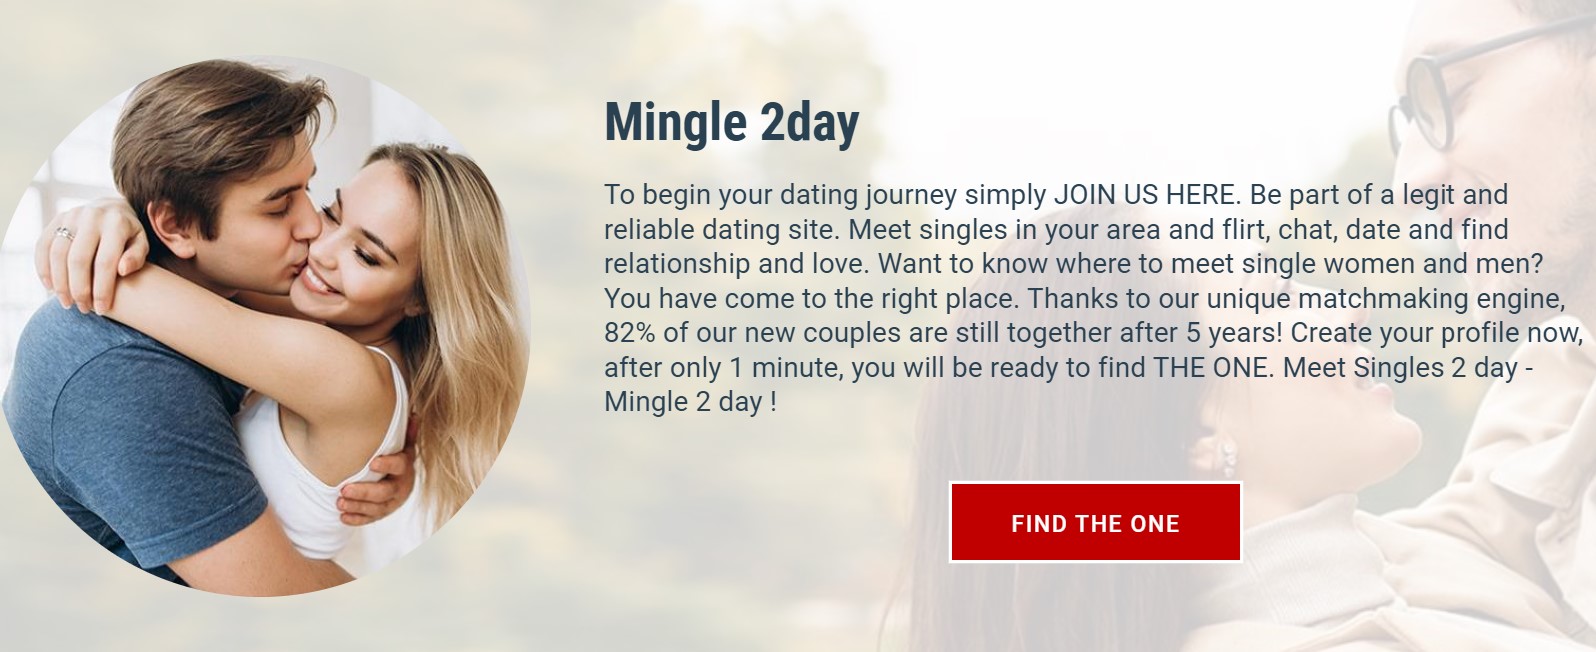 Mingle2day.com